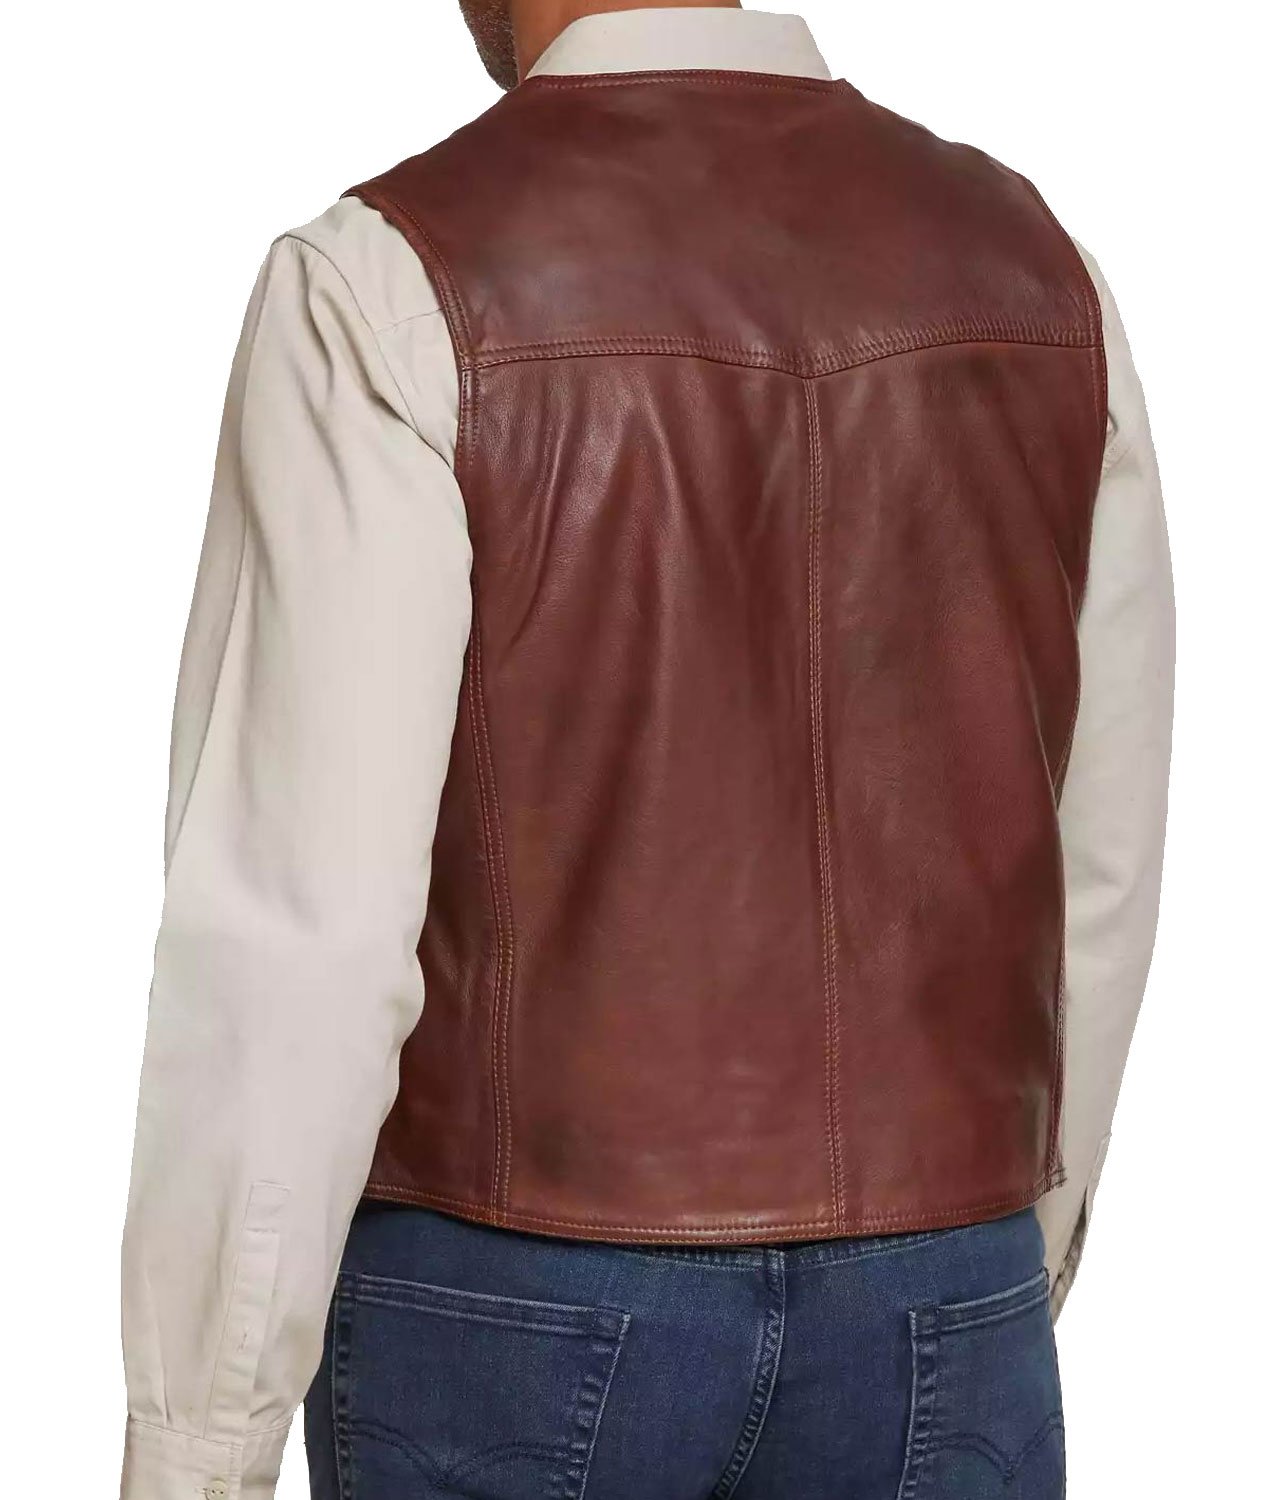 Men's FJ789 Lambskin Leather Brown Vest